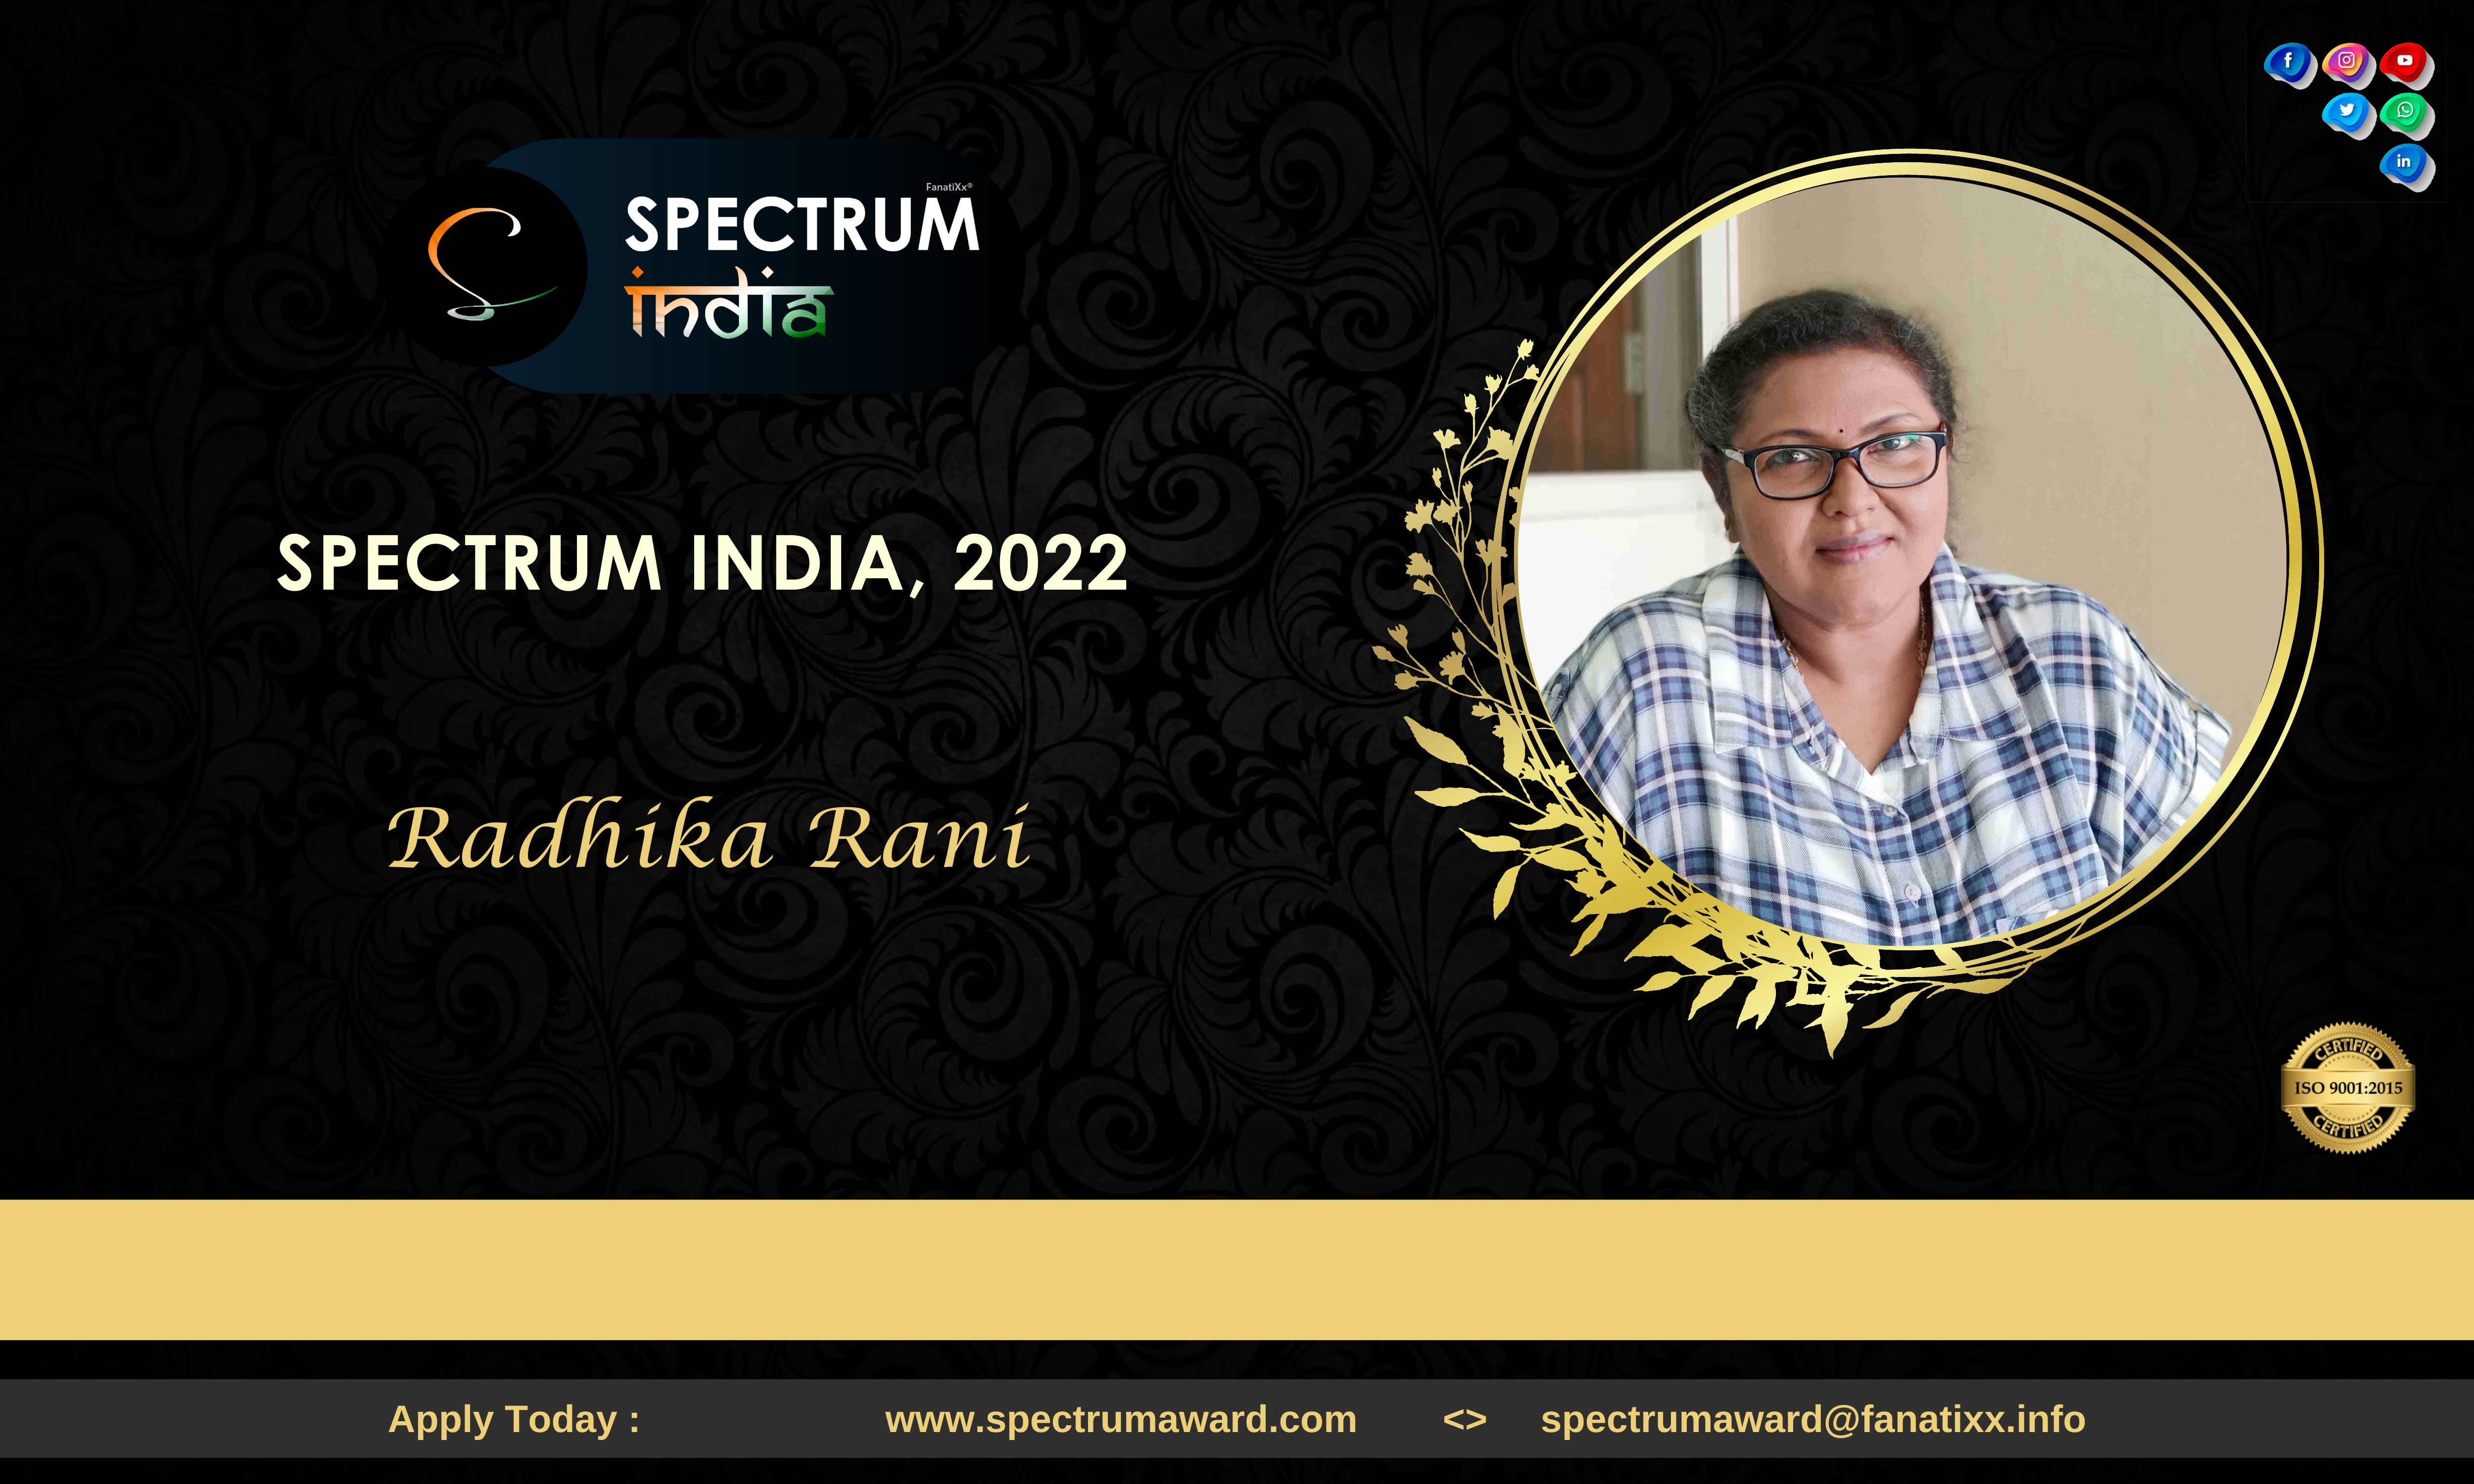 Artist Radhika Rani and her Journey | Spectrum India, 2022